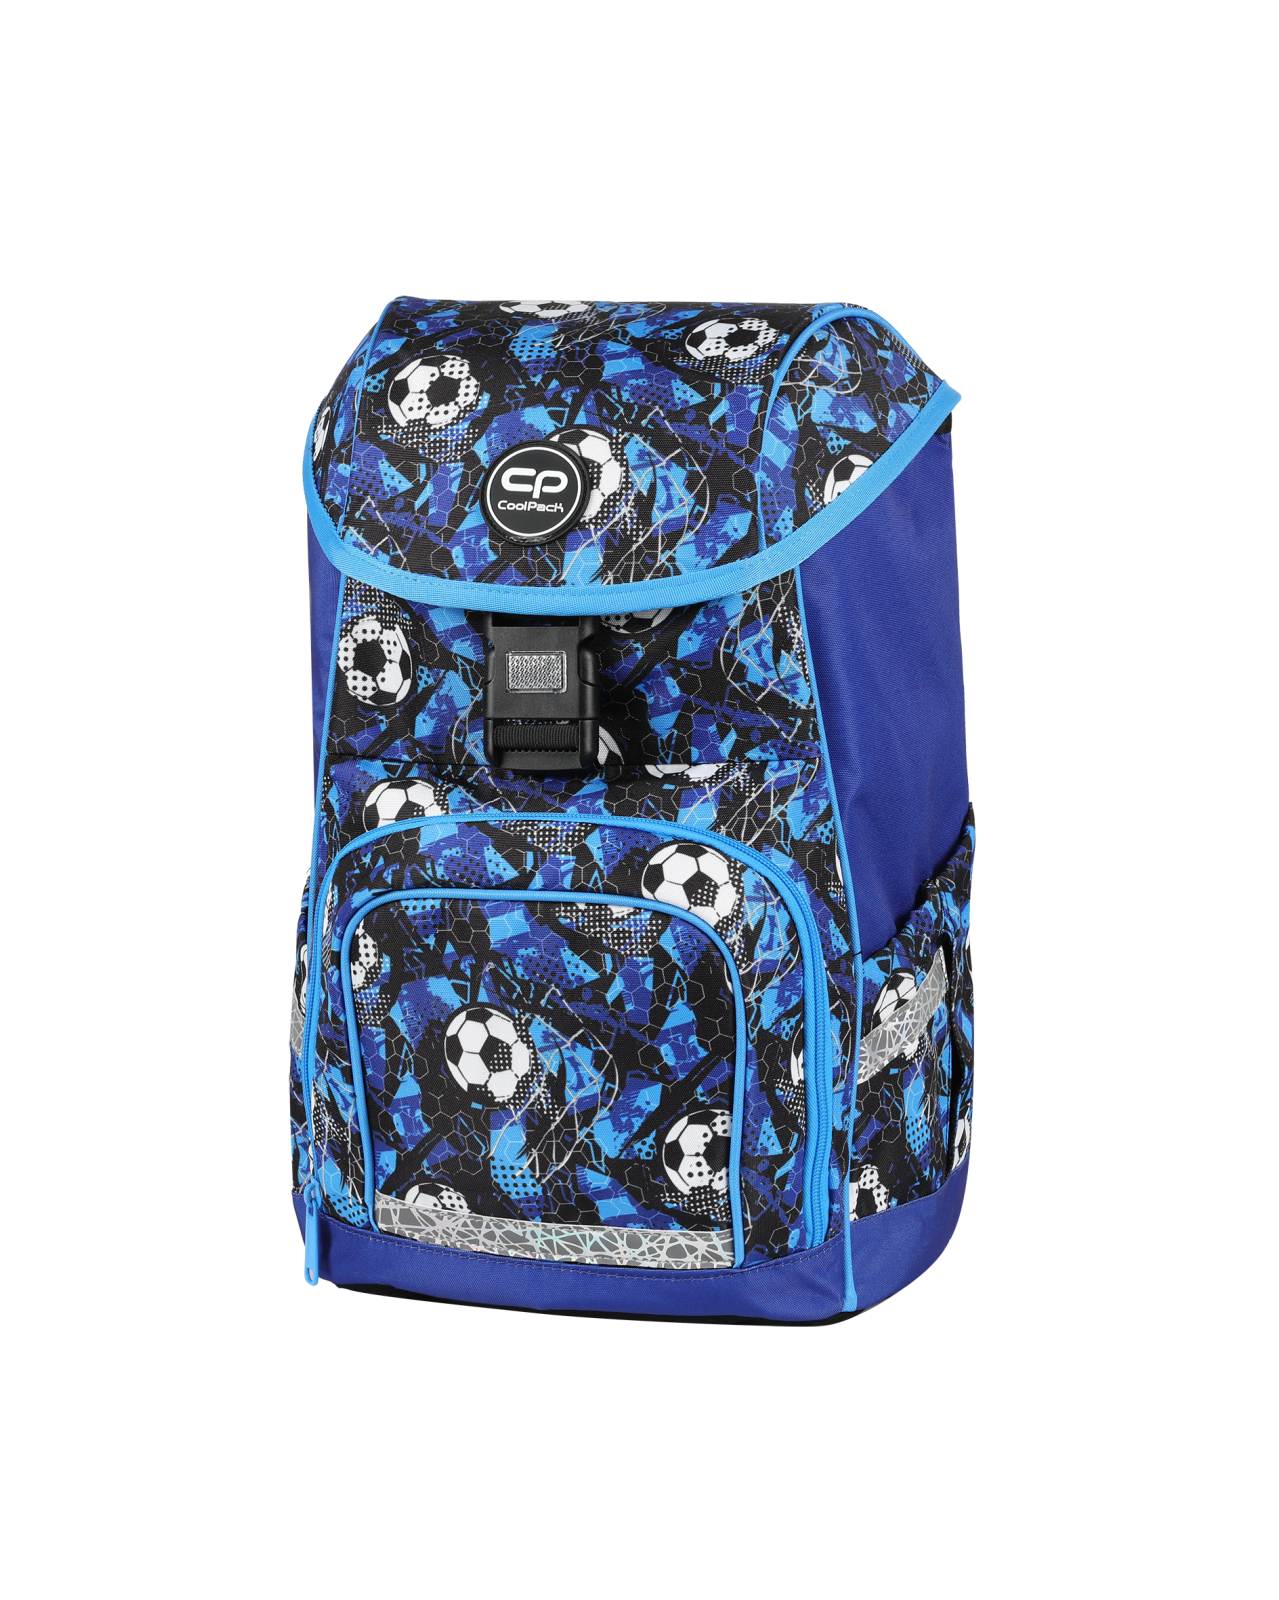 Zaino hardpack boy soccer - 